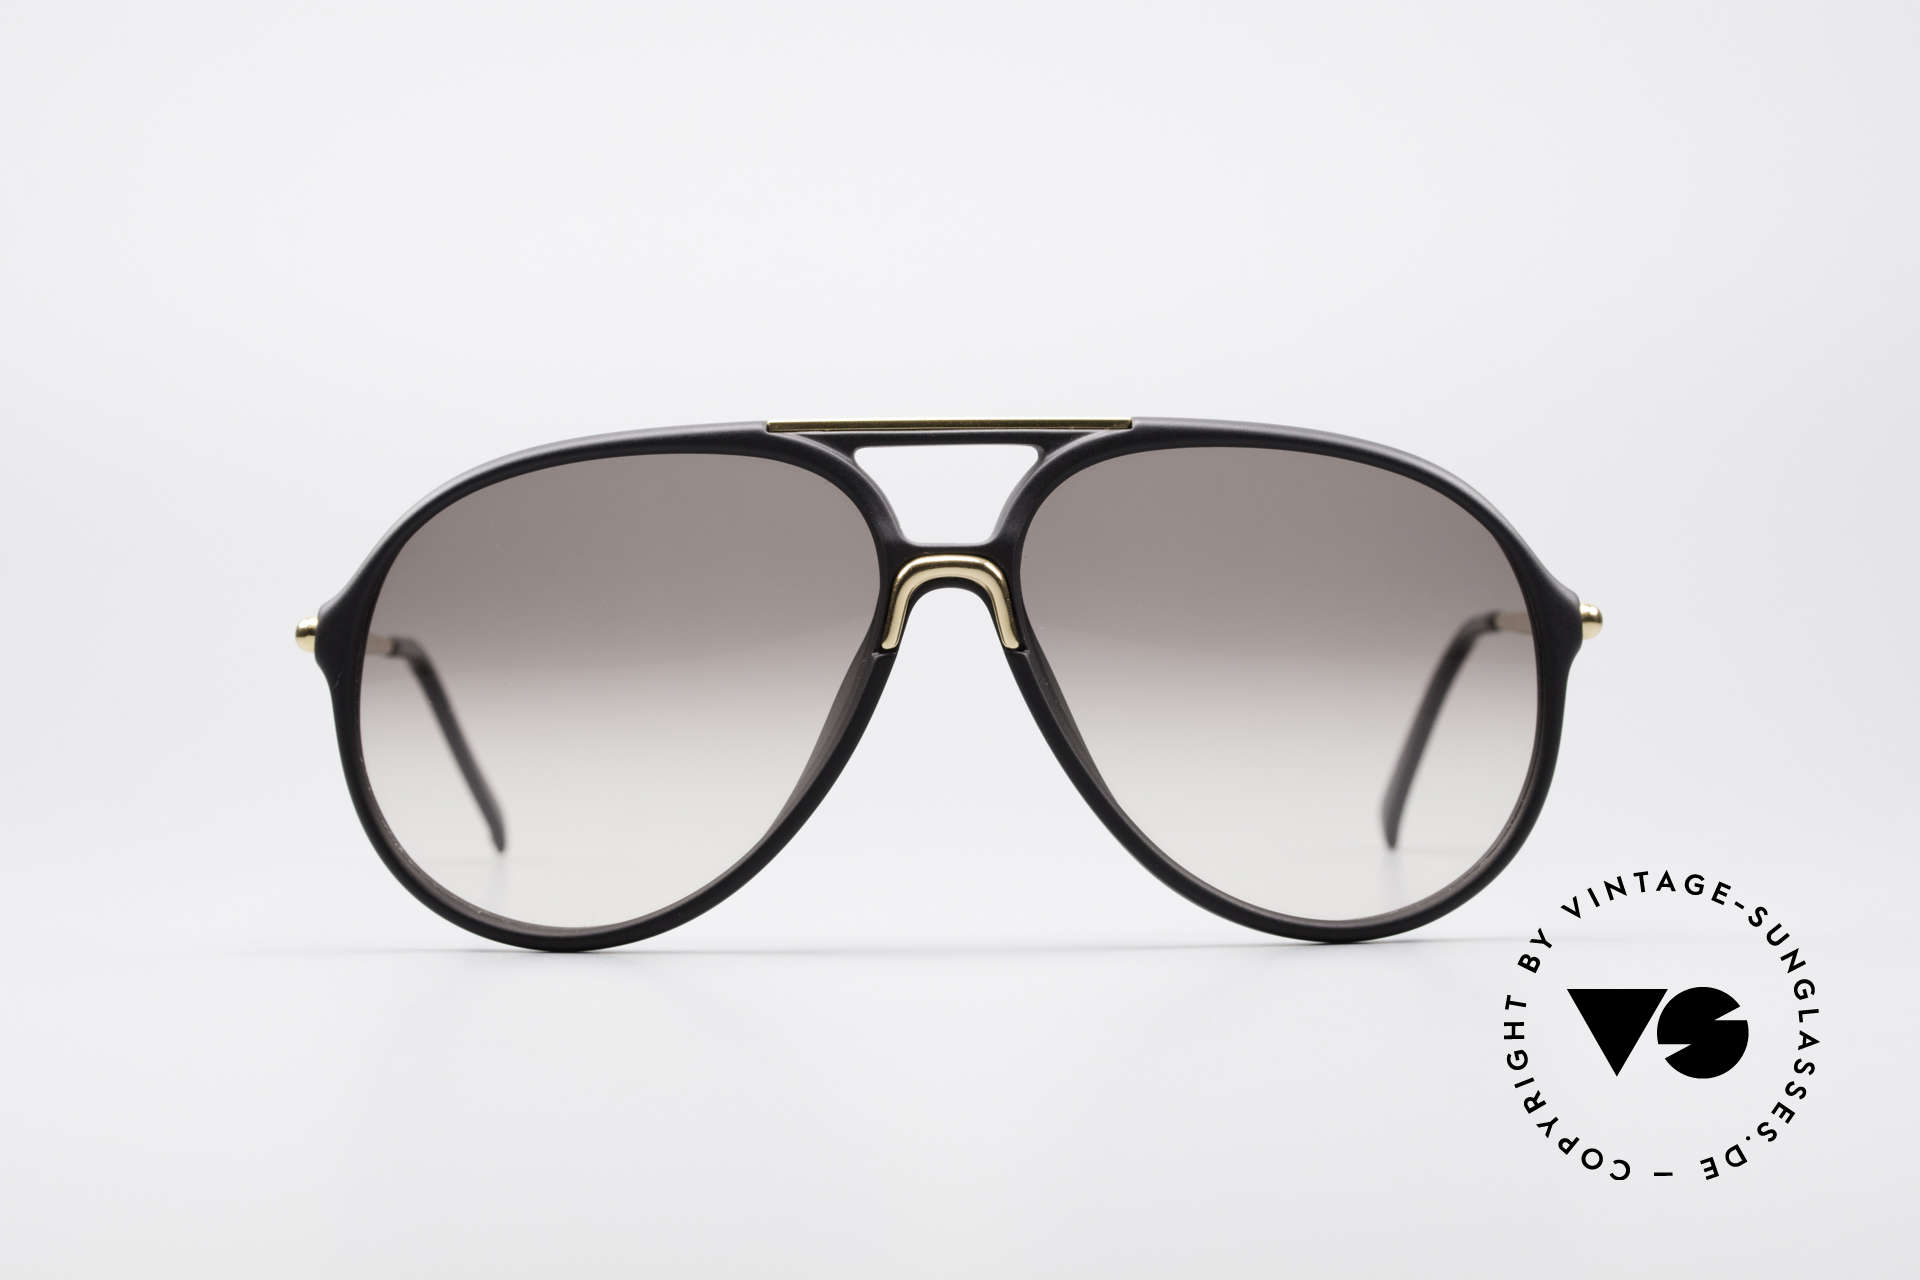 Sunglasses Carrera 5451 90's Movado Collection